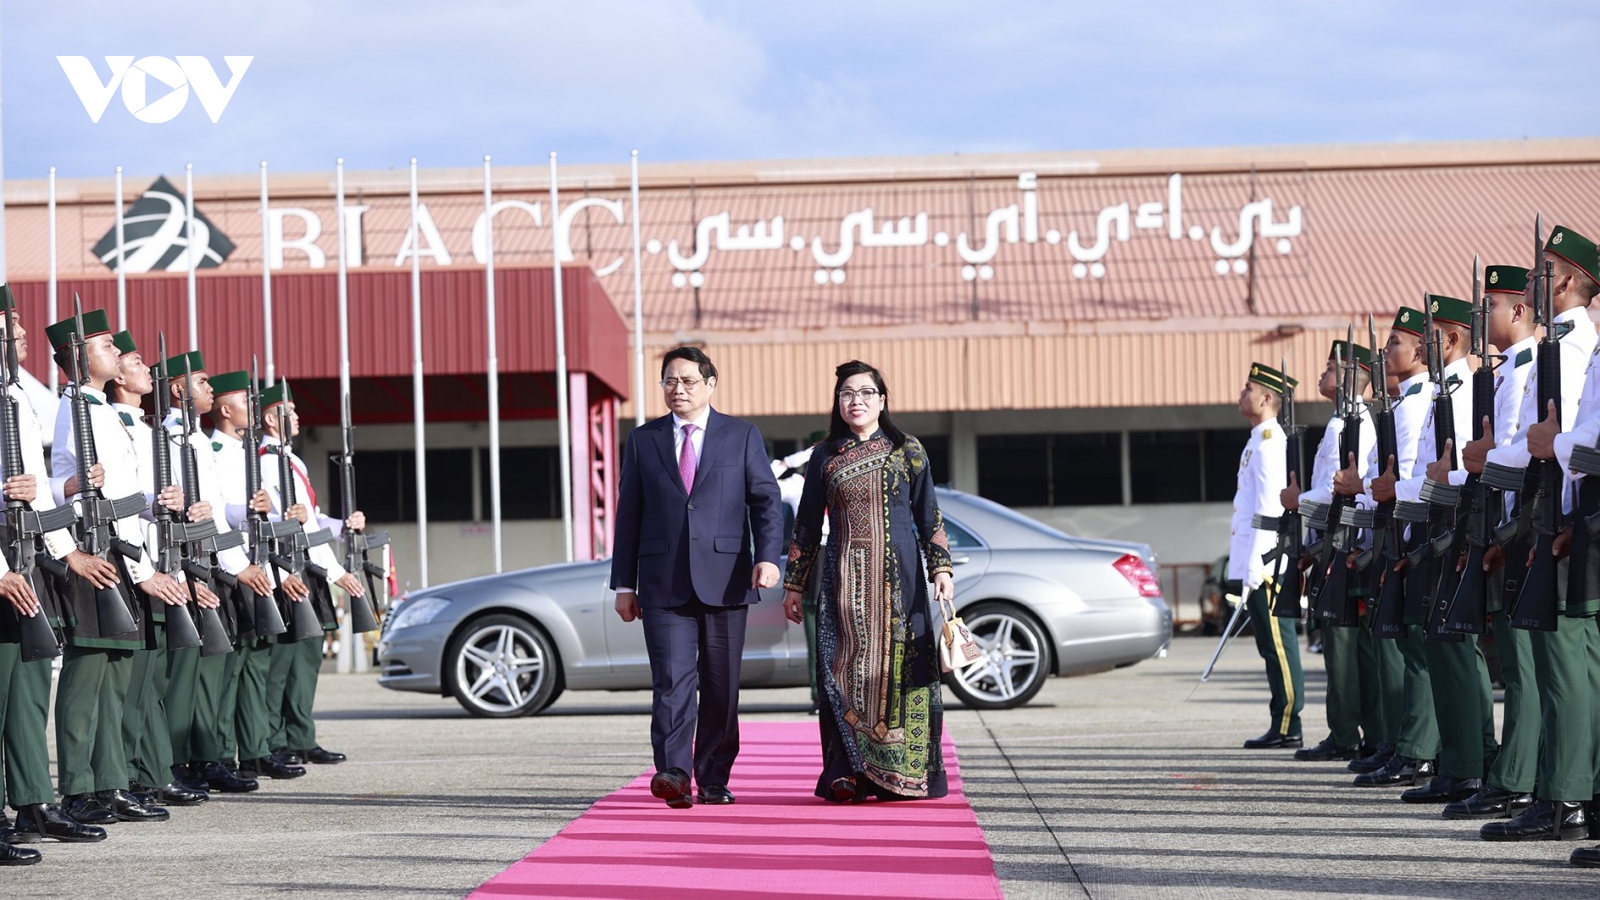 Chuyến thăm Singapore và Brunei Darussalam của Thủ tướng mở ra cơ hội tạo đà phát triển